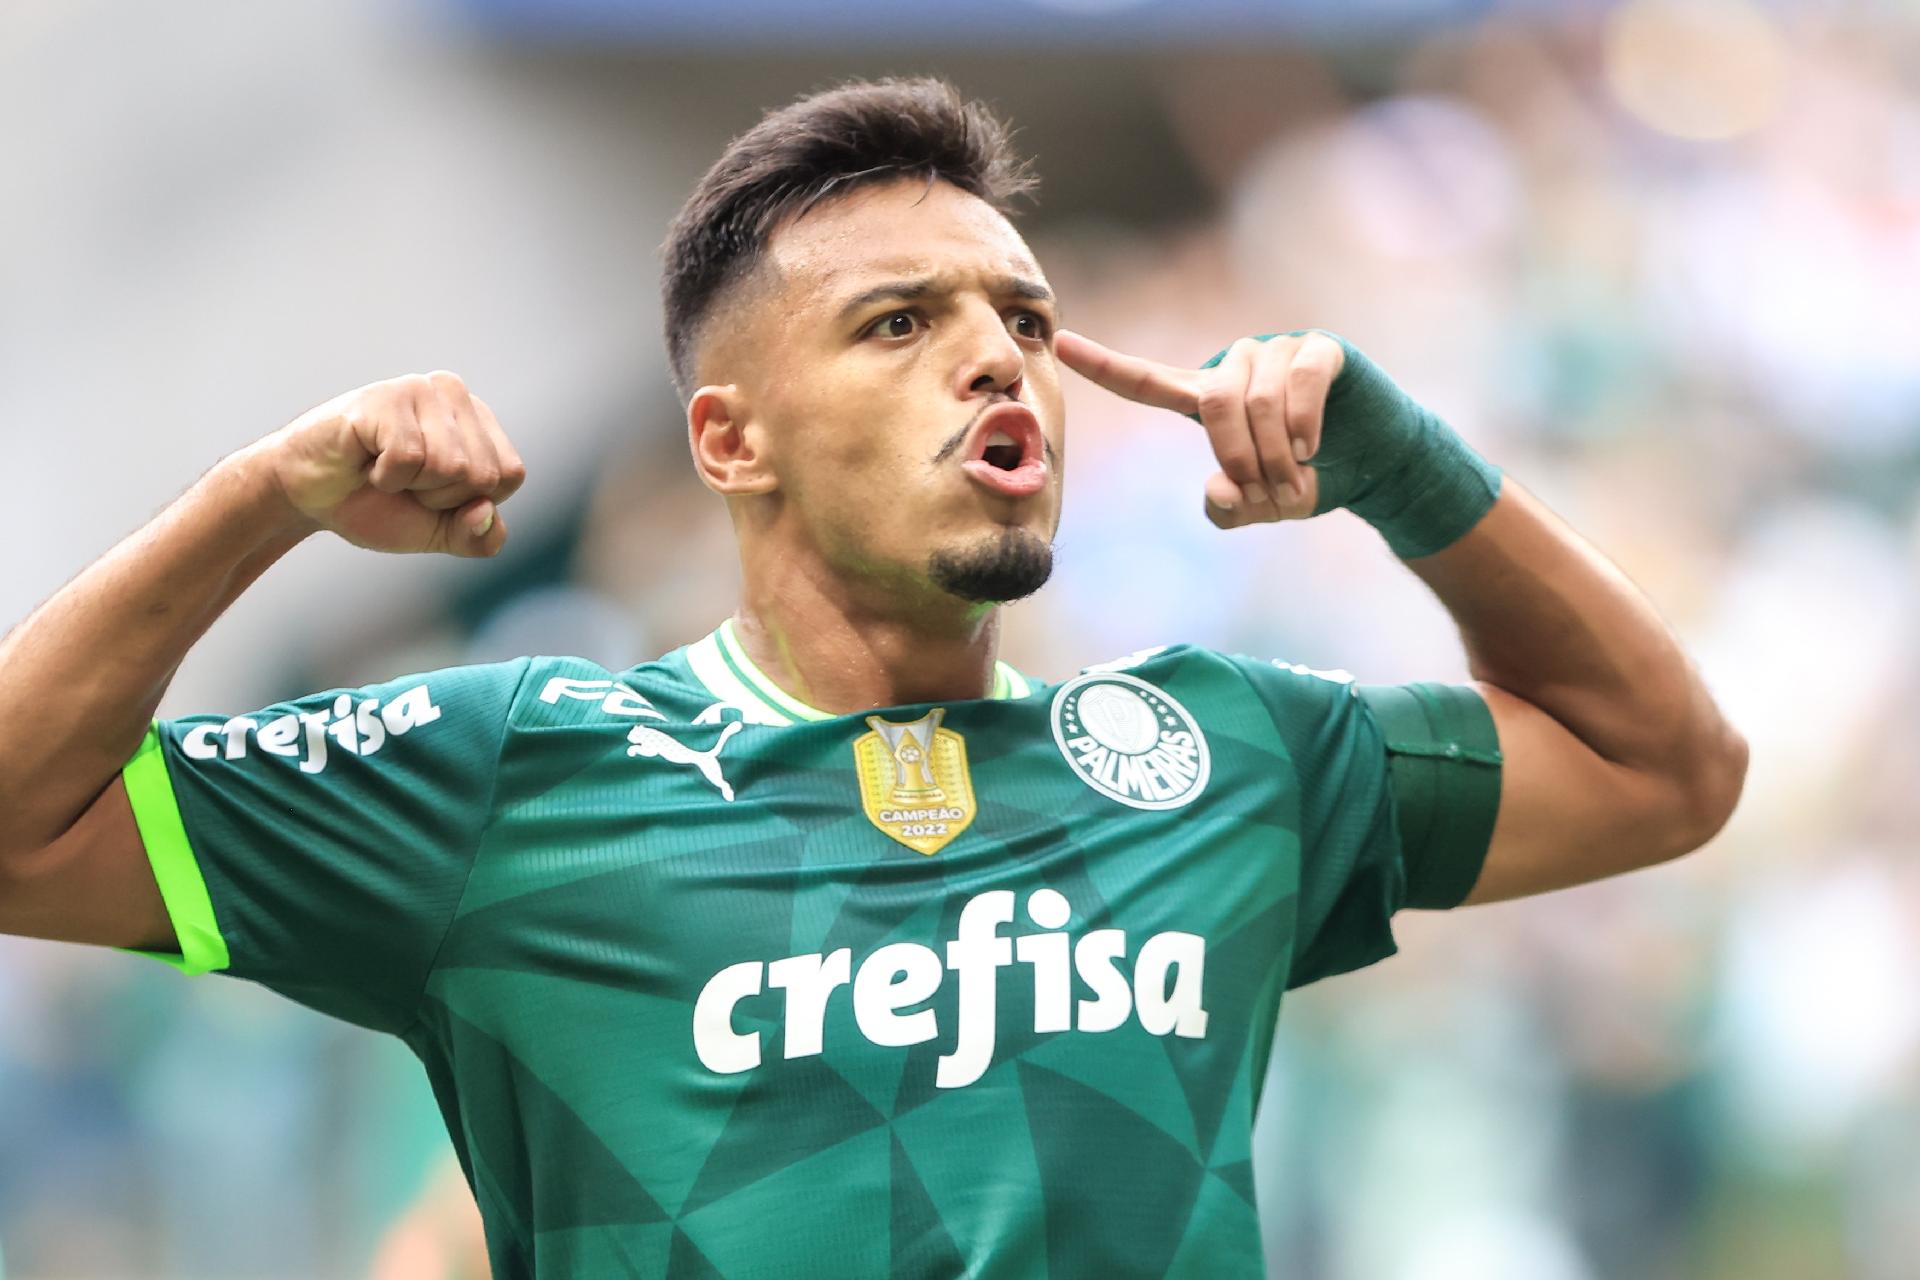 Com gol nos acréscimos, Água Santa vence o Palmeiras e sai na